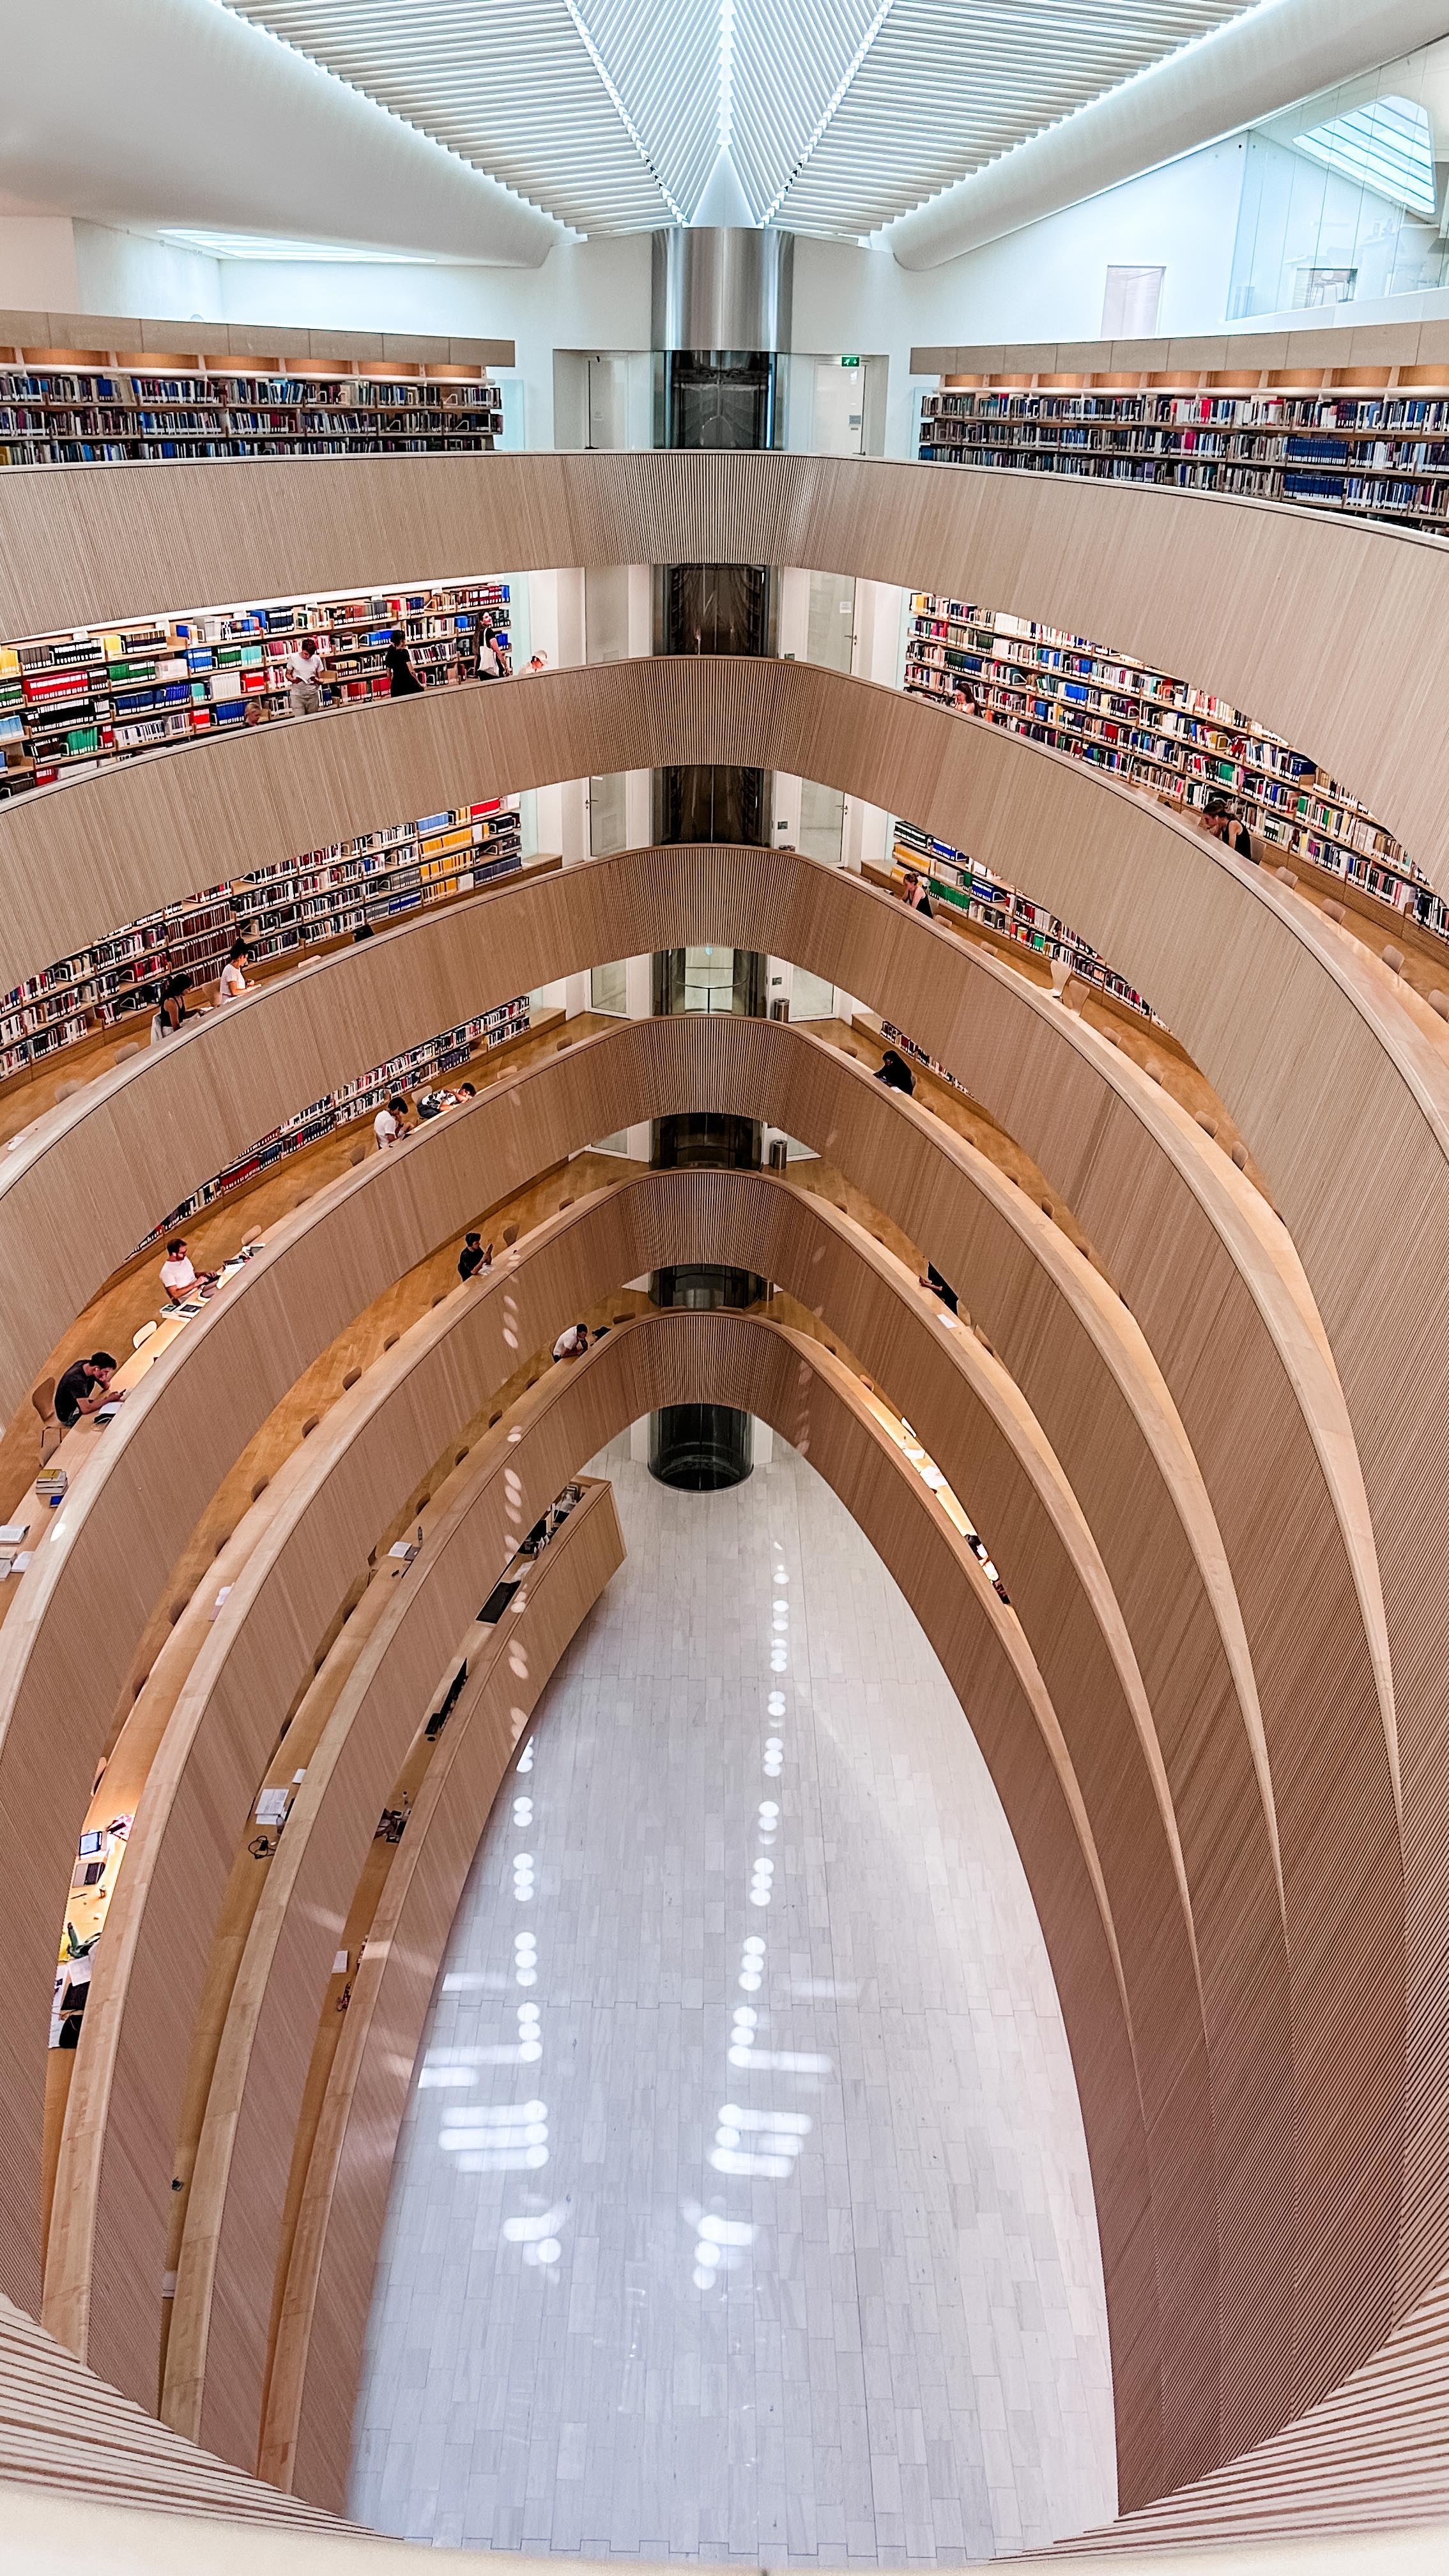 M-aș muta vreo lună într-o asemenea bibliotecă 📚
Multumesc, @mmaria__cosau , pentru recomandarea acestui loc superb ♥️♥️♥️♥️ Cititorii din comunitatea #finesociety sunt THE BEST 🥳🥳🥳
#library #RechtswissenschaftlicheBibliothek #calatrava #santiagocalatrava #calatravaarchitecture #calatravarchitect #librariesofinstagram #books #booklover